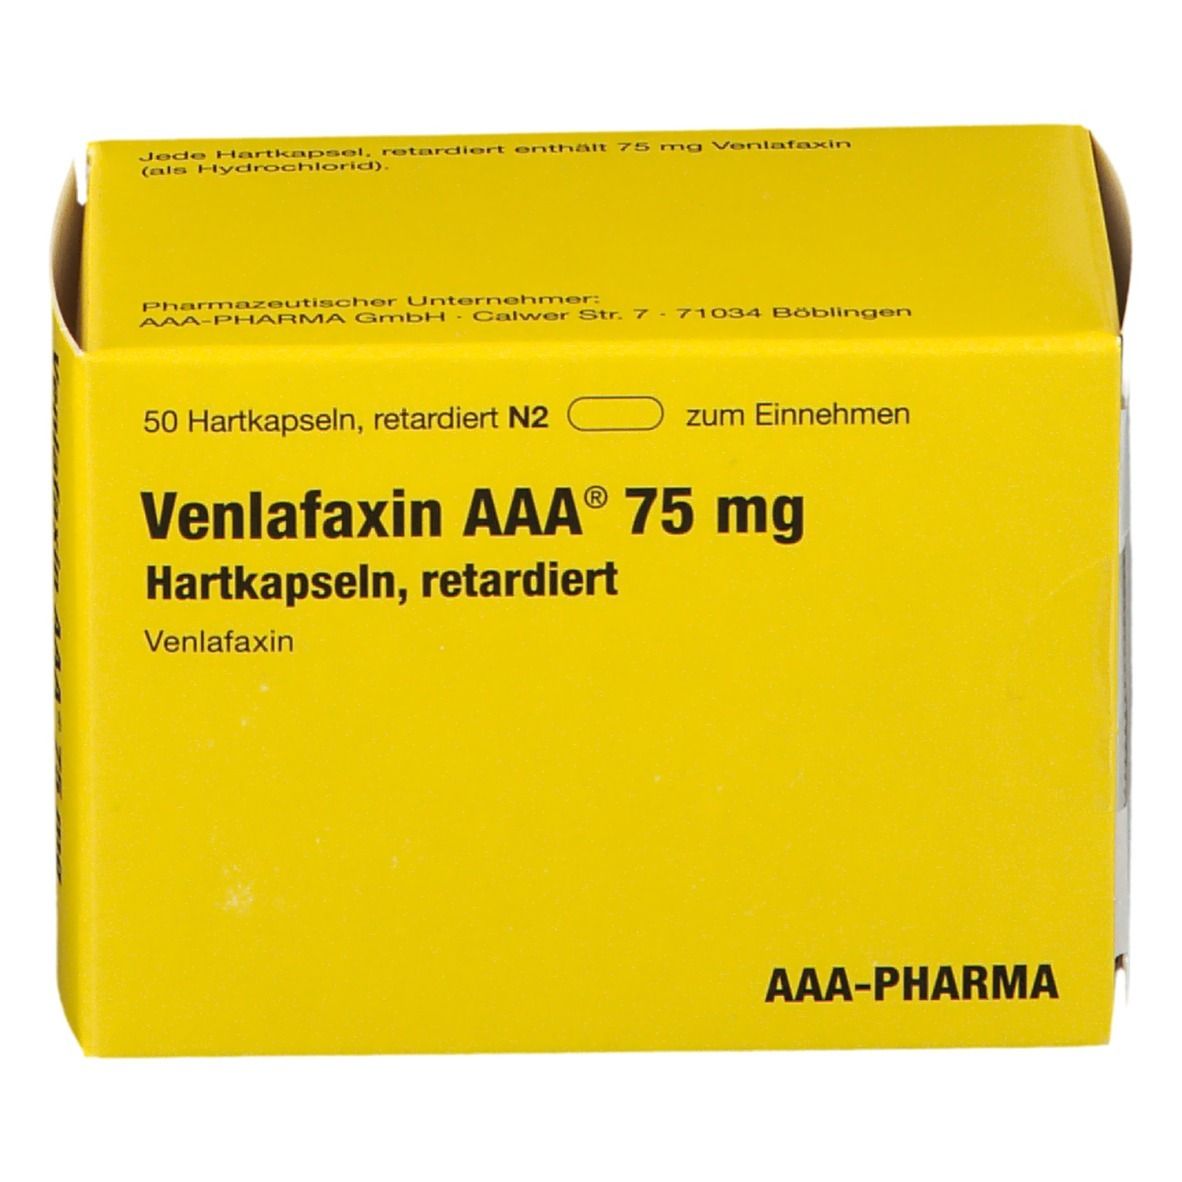 Venlafaxin AAA® 75Mg a